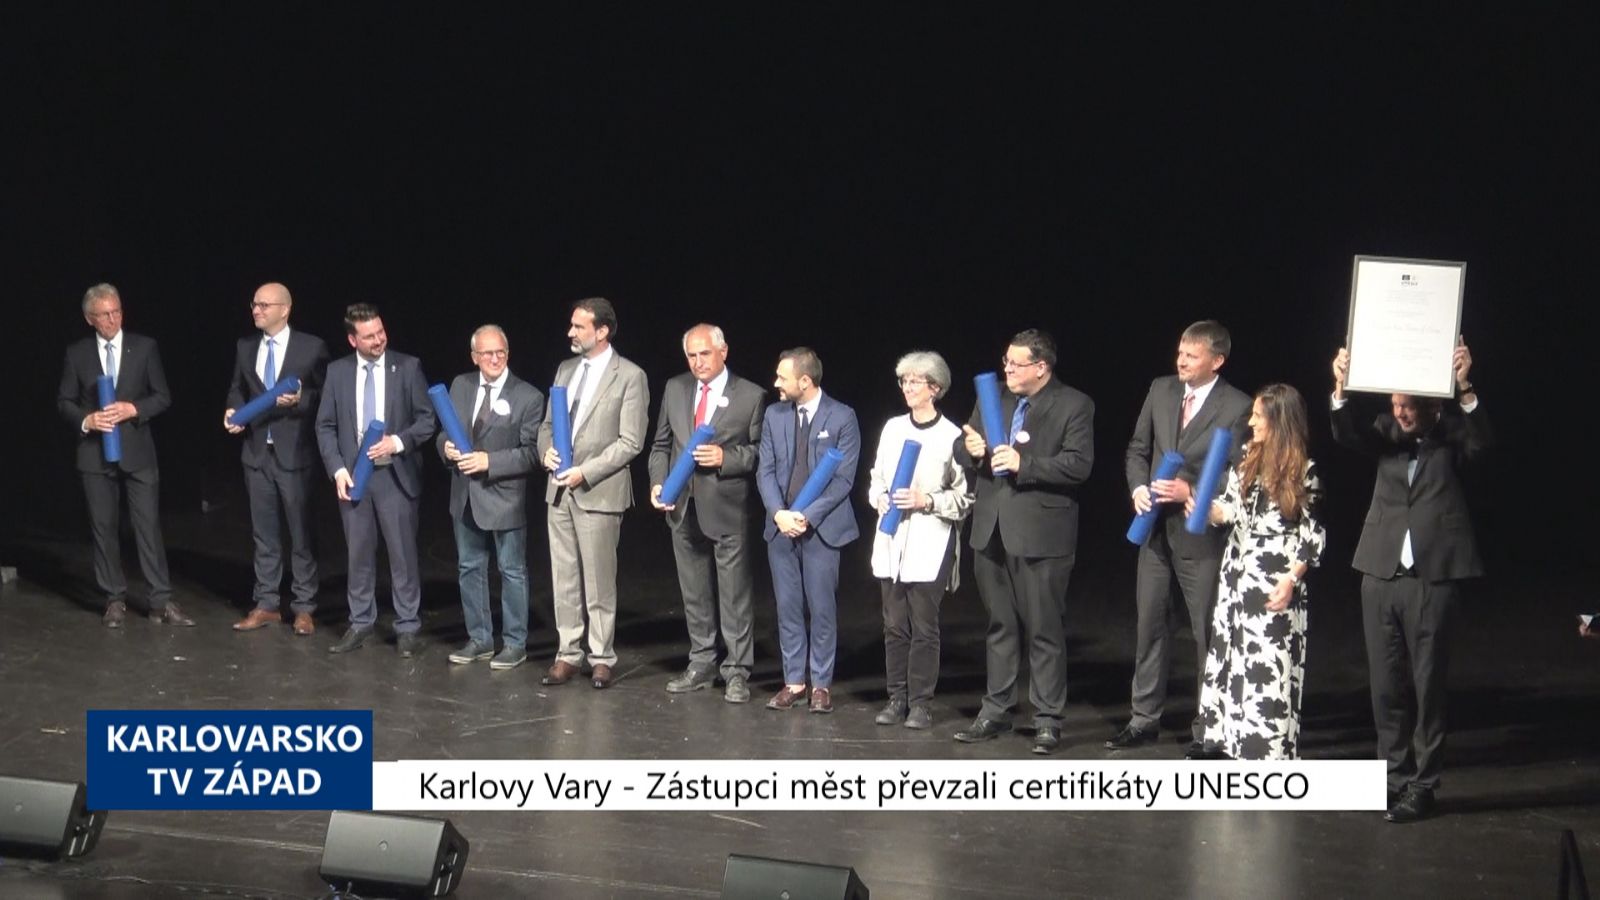 Karlovy Vary: Zástupci měst převzali certifikáty UNESCO (TV Západ)